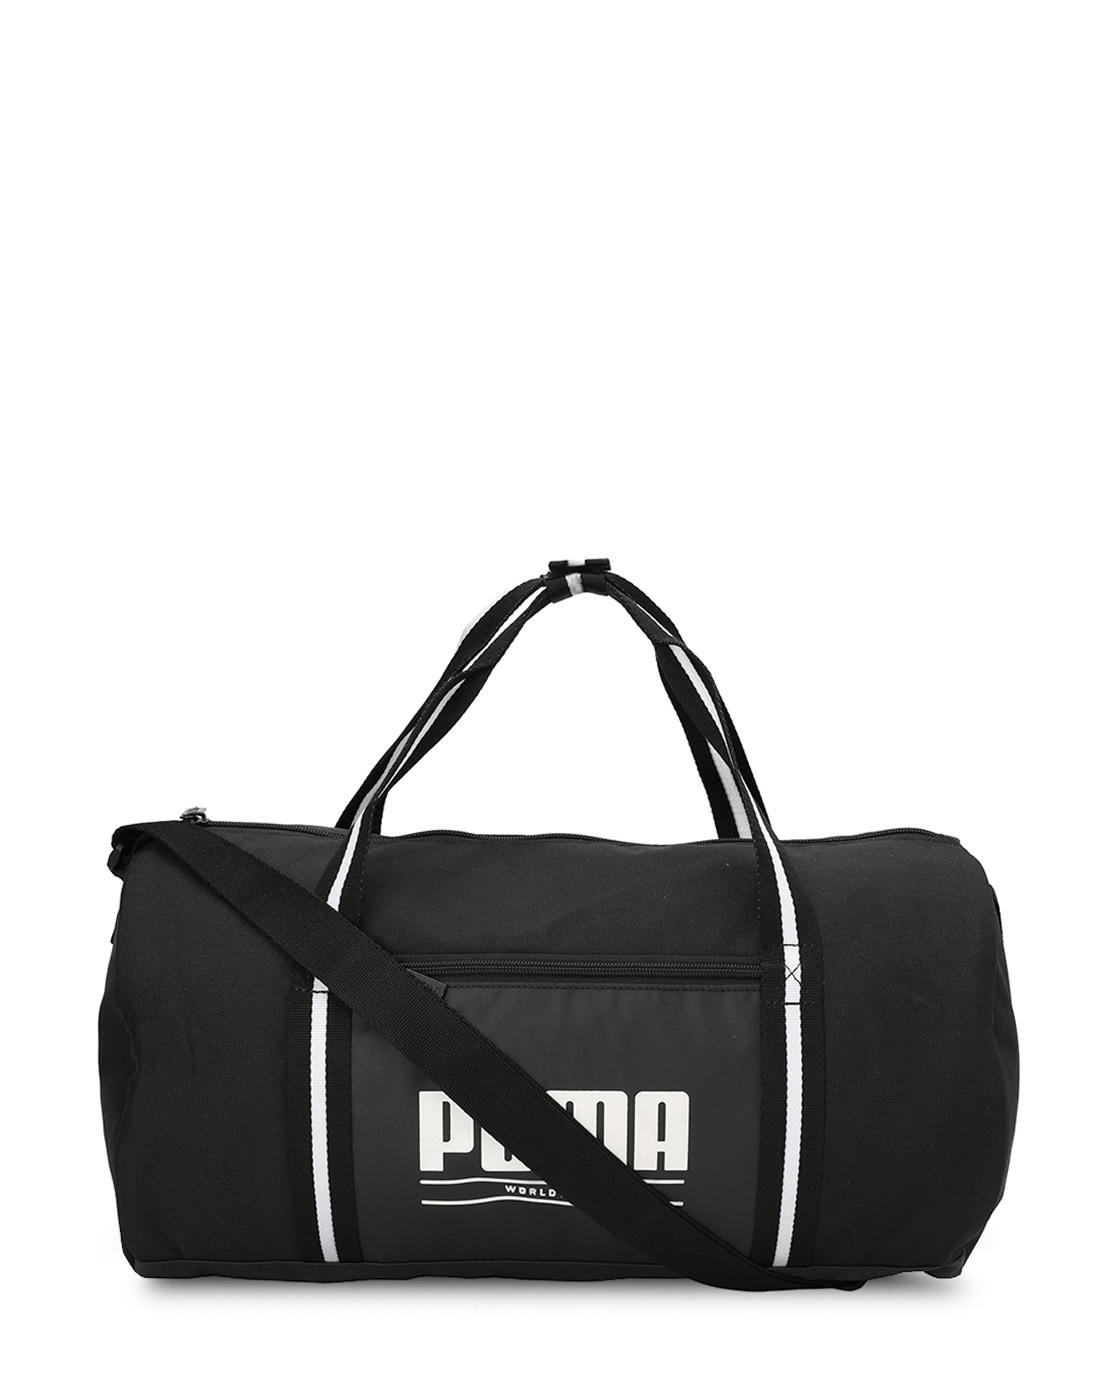 Black Handbags for Women by Puma Online | Ajio.com